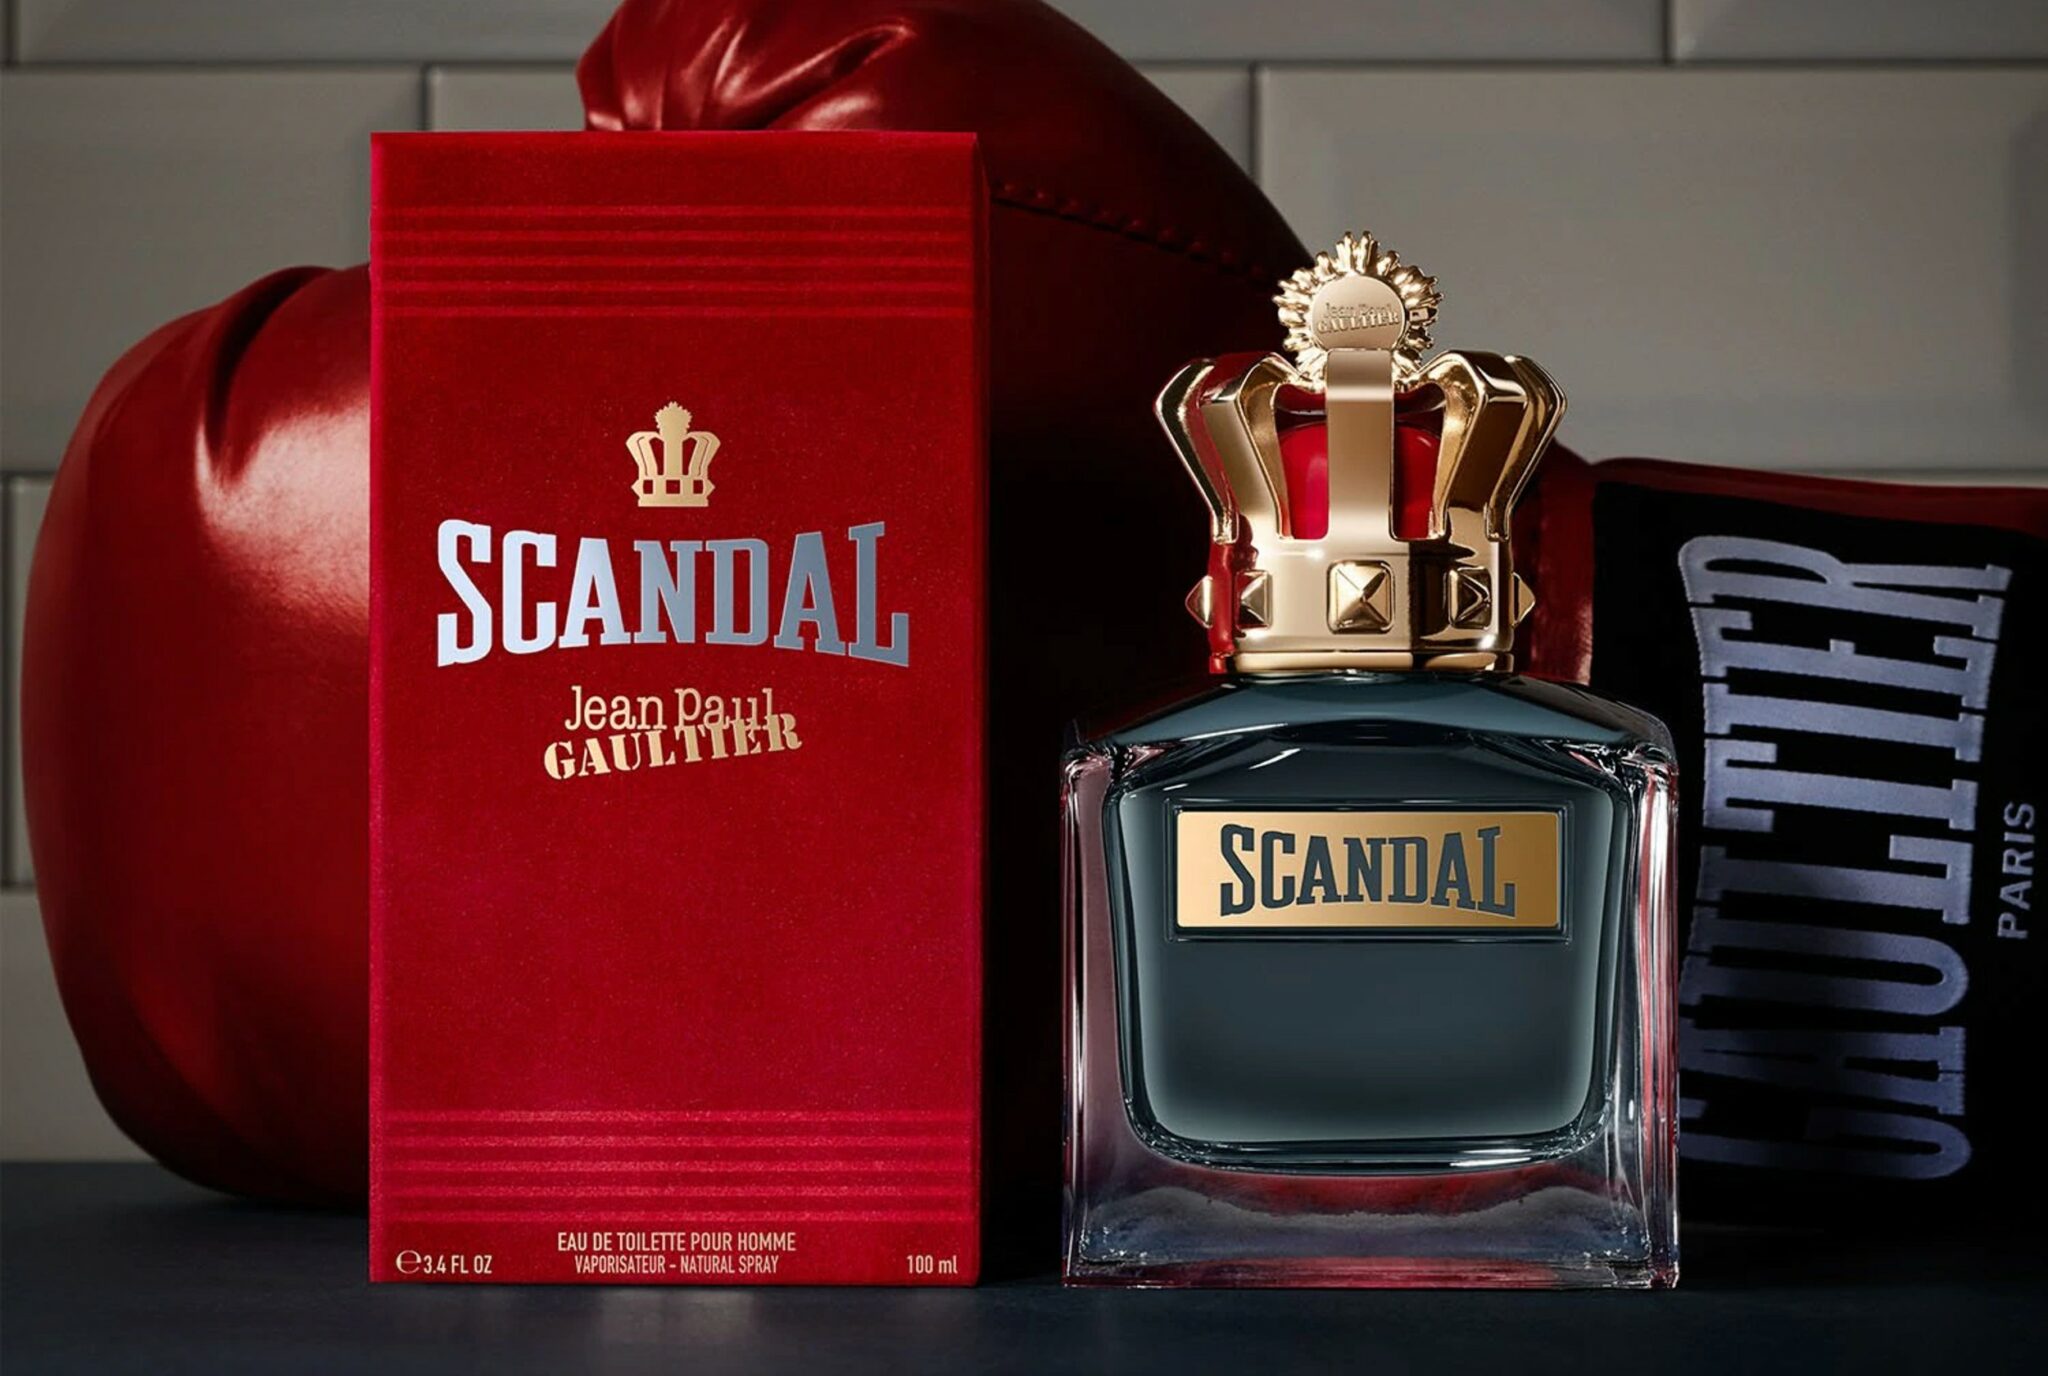 Scandal Gaultier meilleur nouveau parfum de l'année prix du public